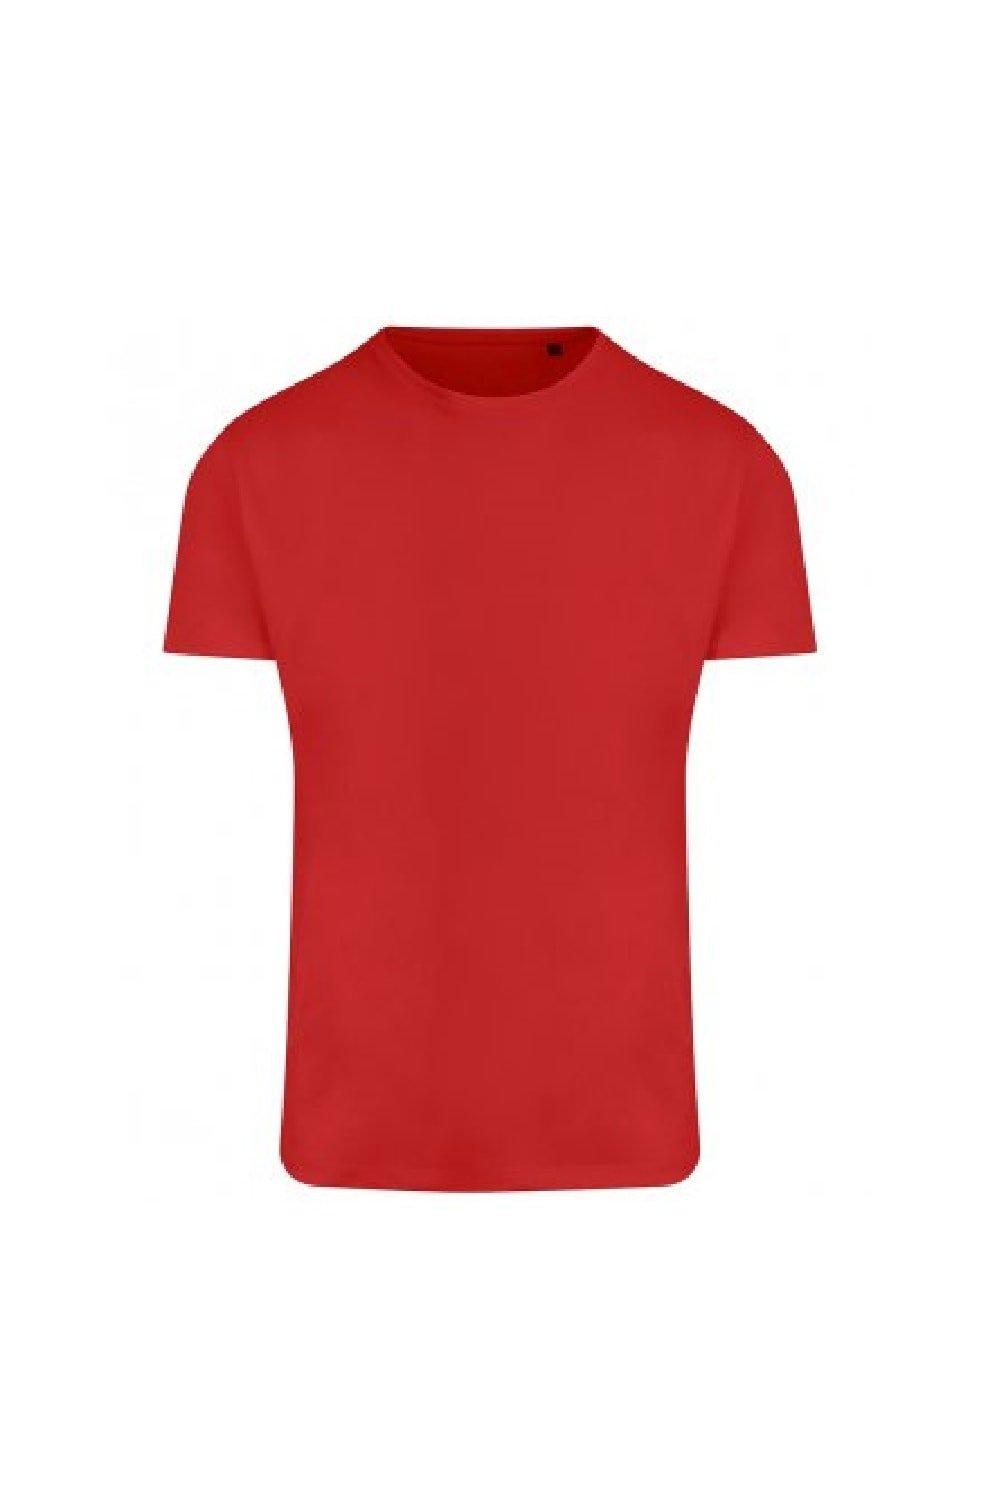 Спортивная футболка Ambaro из переработанного материала Ecologie, красный clutch fit for oleo mac sparta 36 37 38 42 43 44 efco ef3600 ef3700 3800 stark 25 strimmer spring shoe frizione 4191153ar